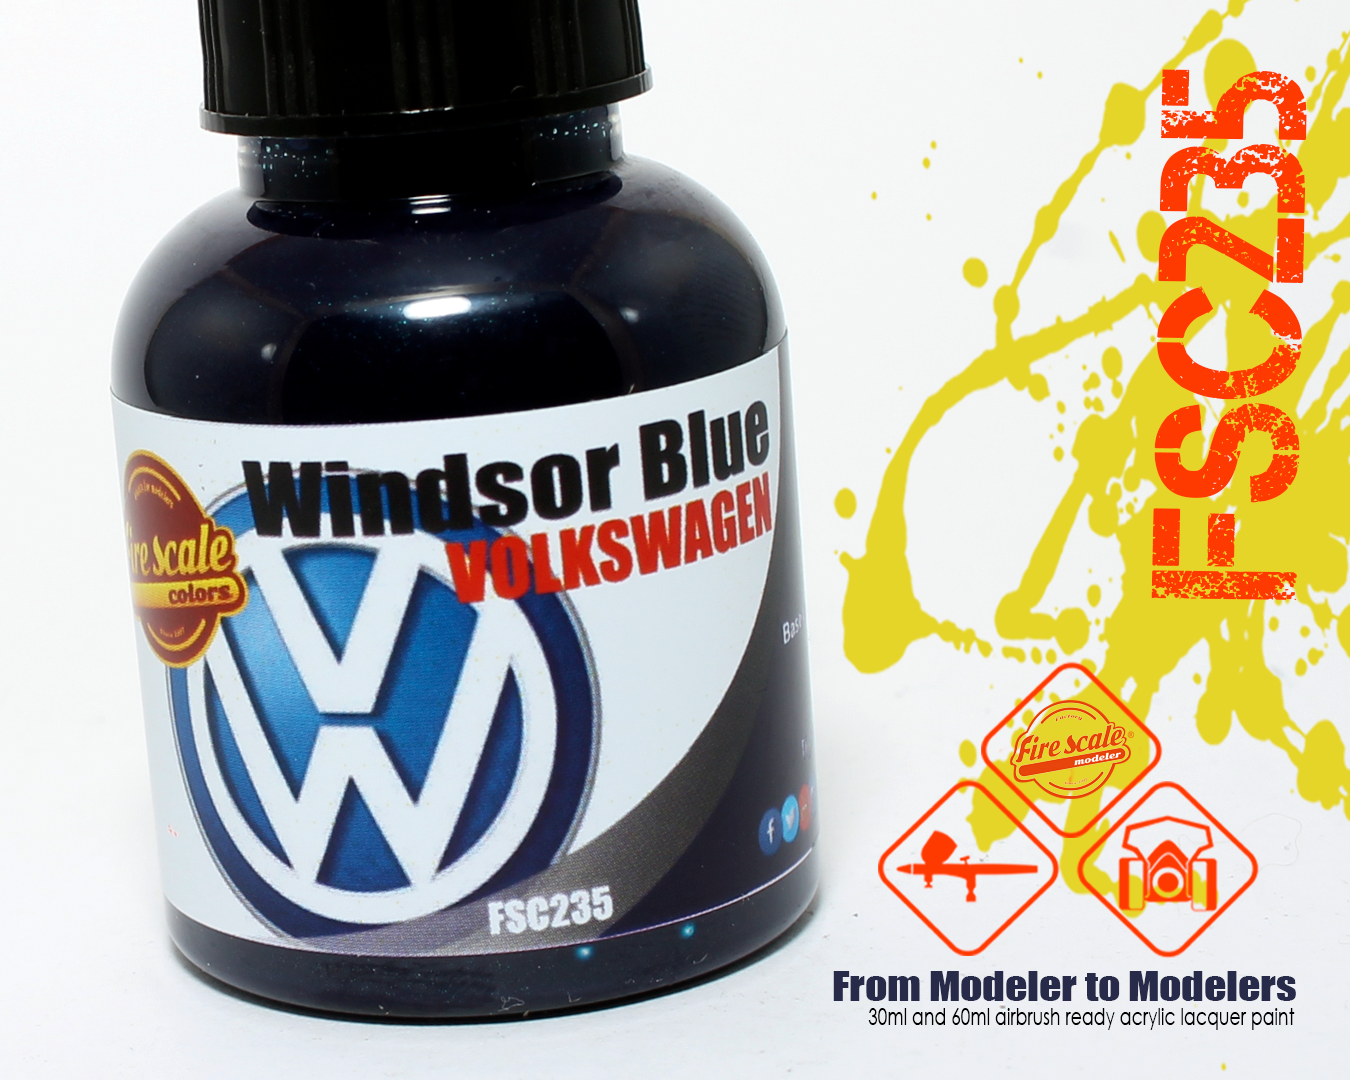 Windsor blue Volkswagen